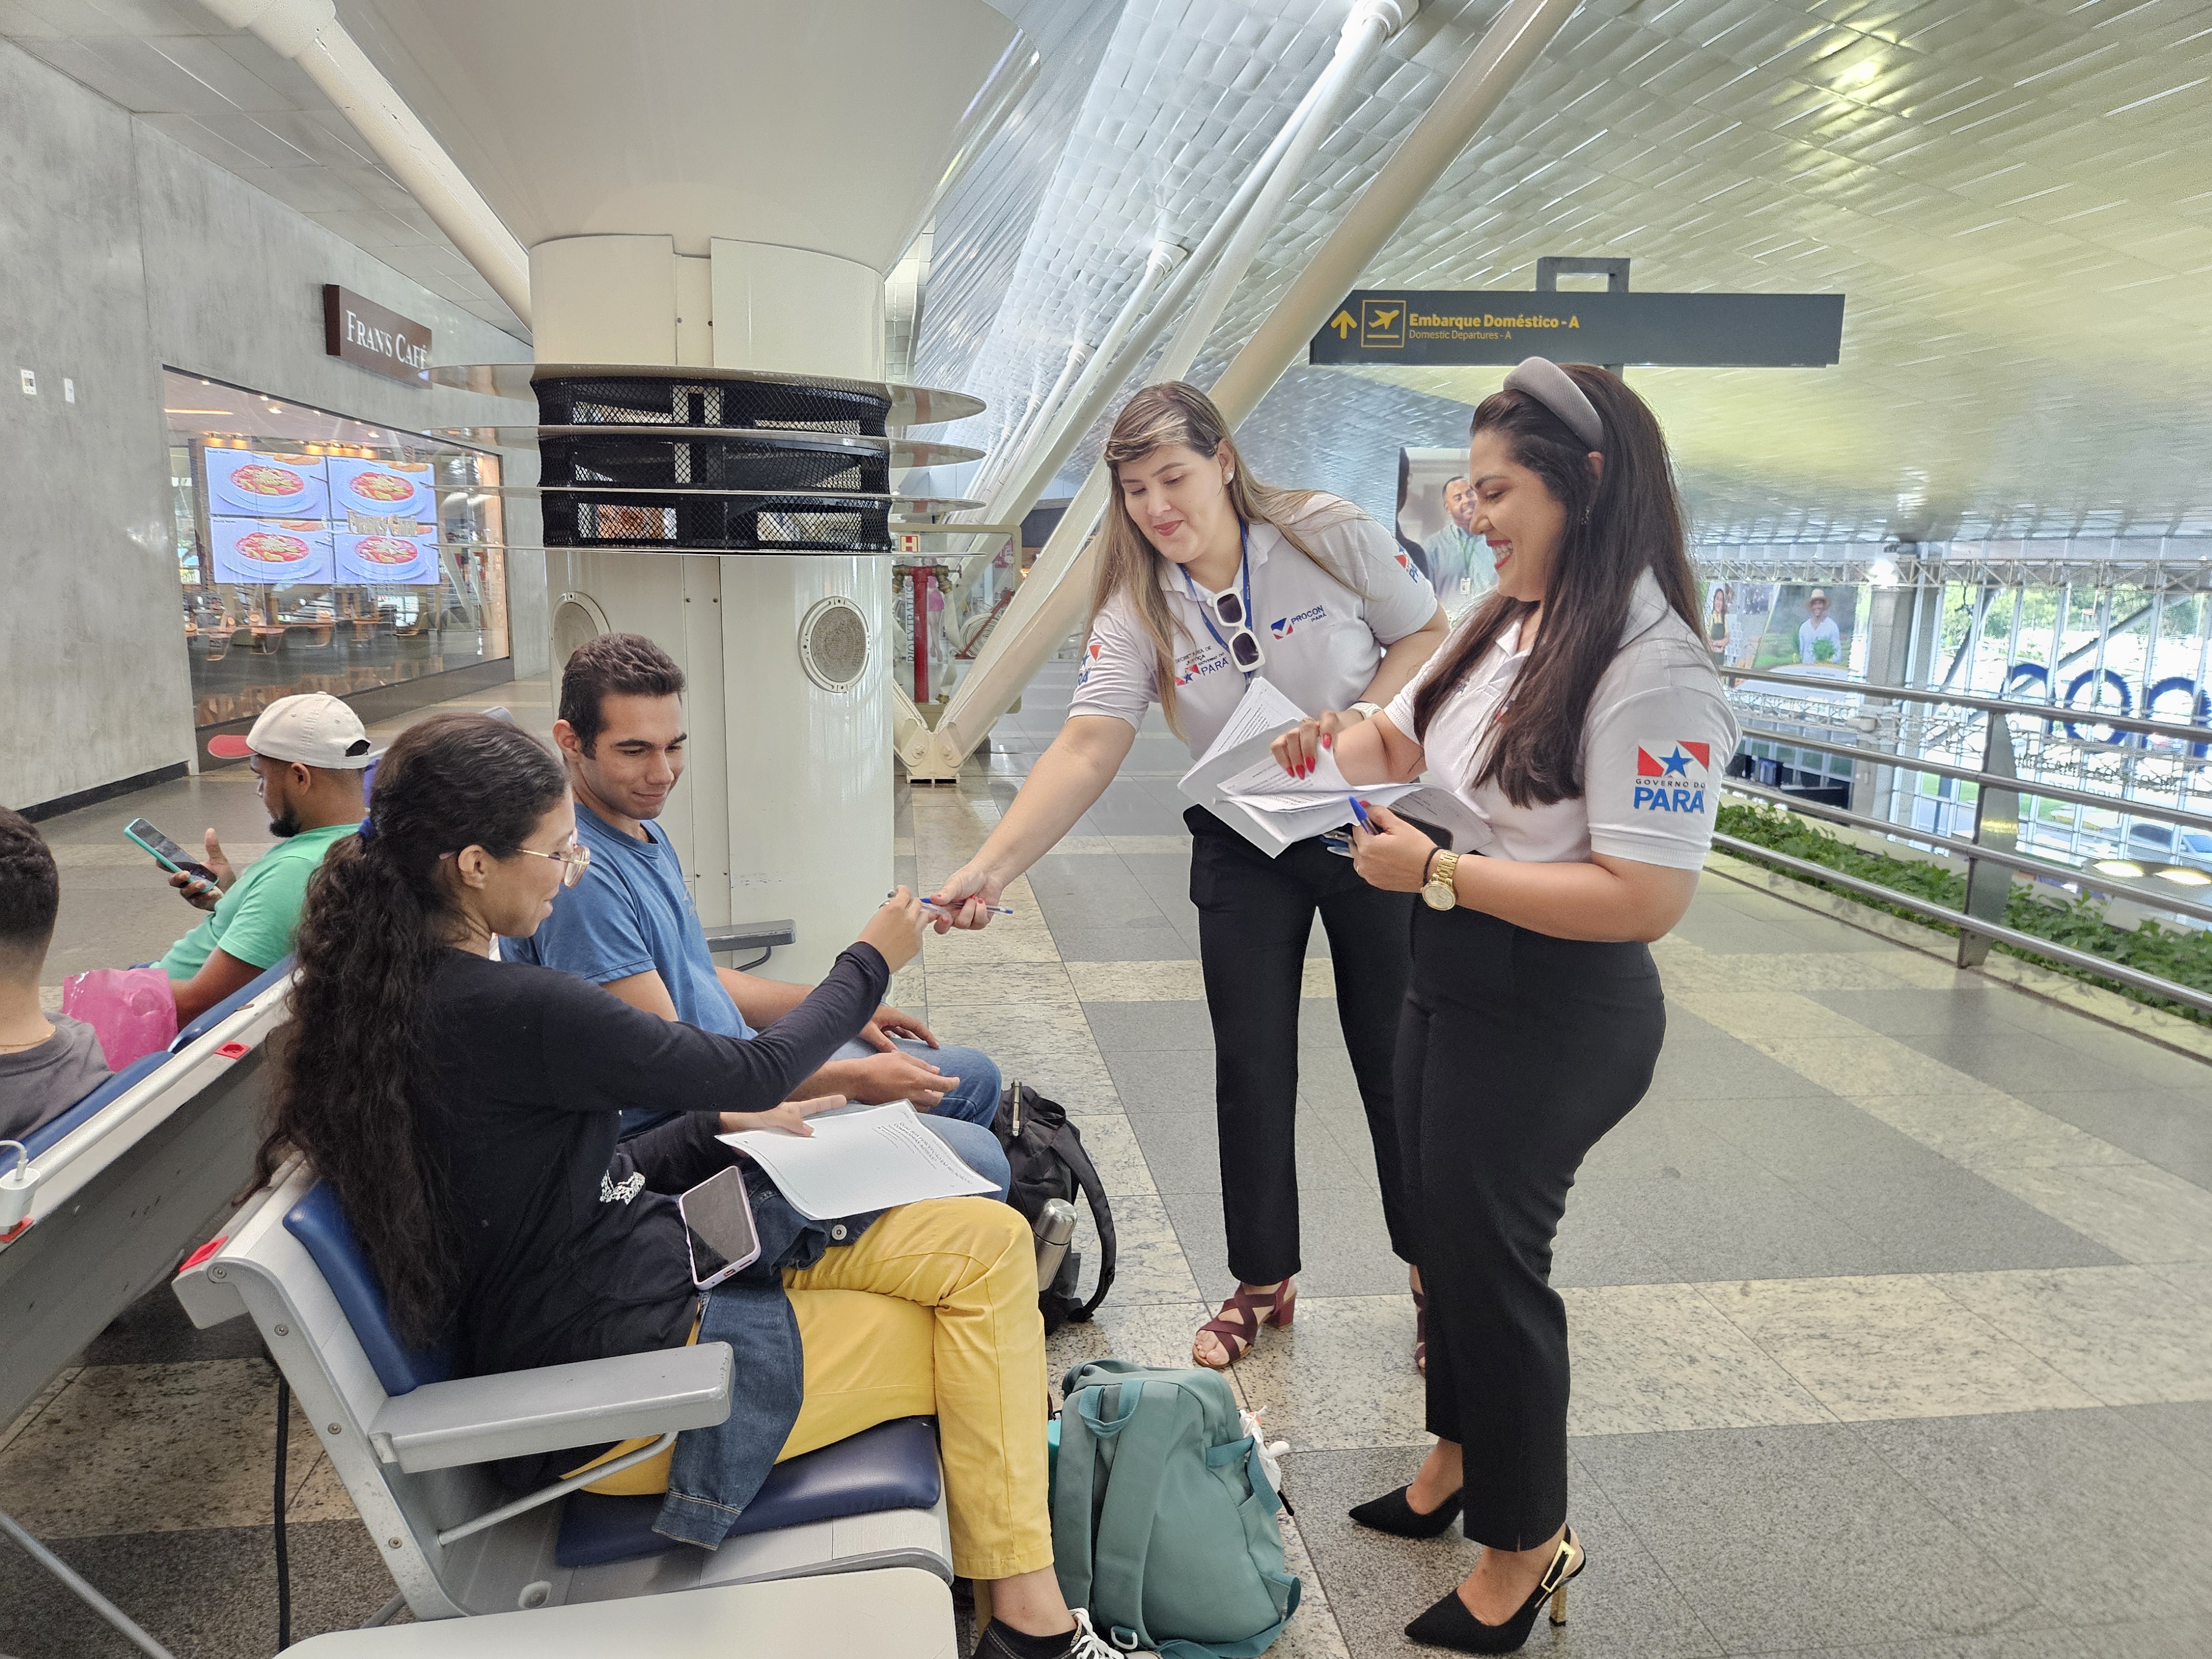 Procon Pará entrega pesquisa a passageiros no aeroporto